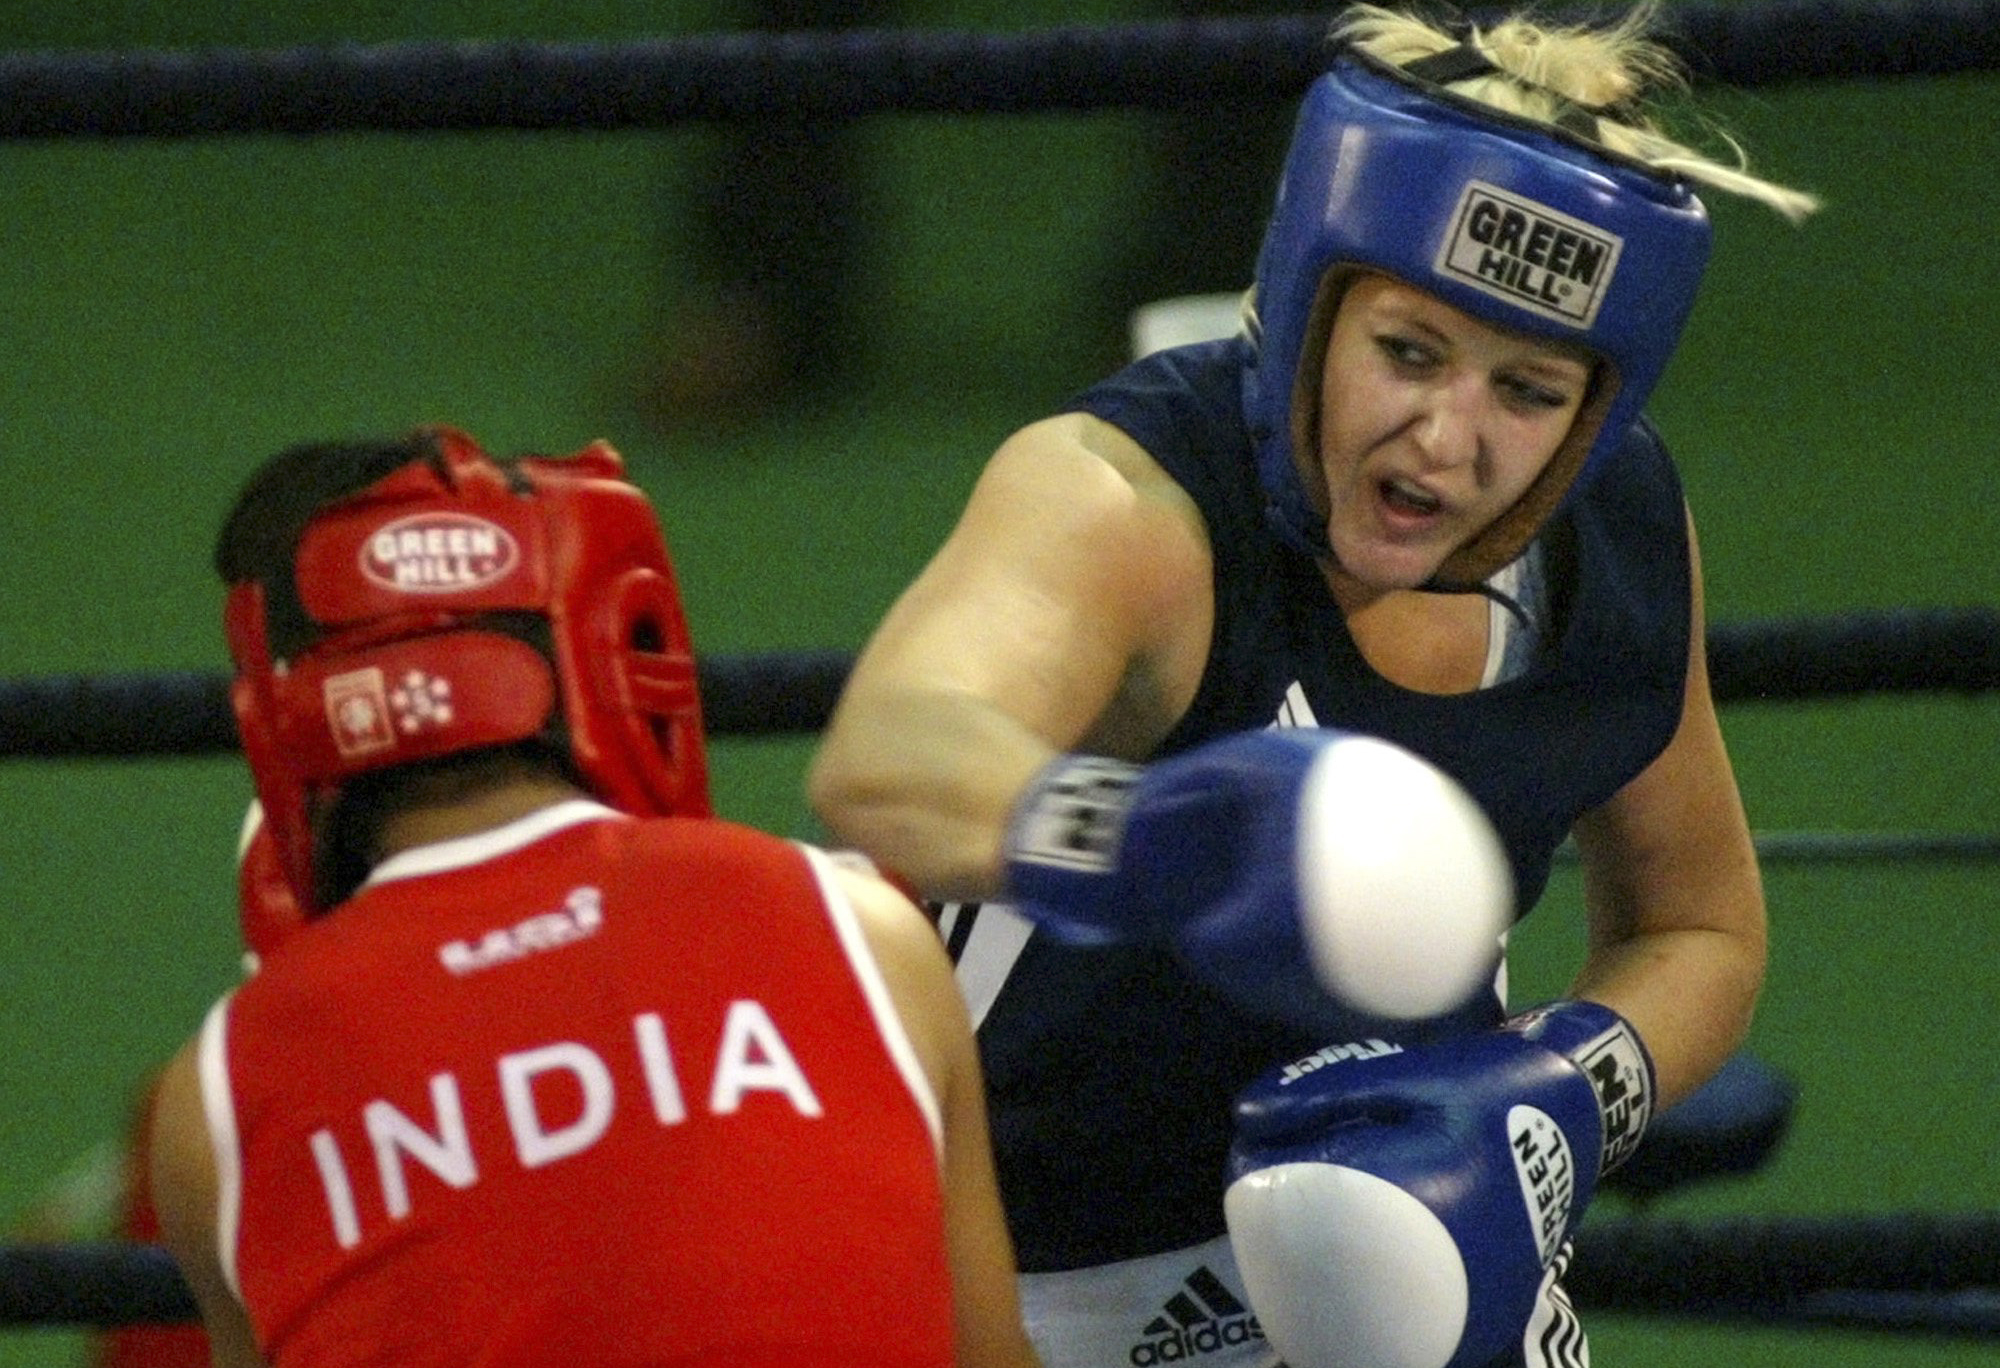 VM, Indien, Klara Svensson, boxning, Anna Laurell